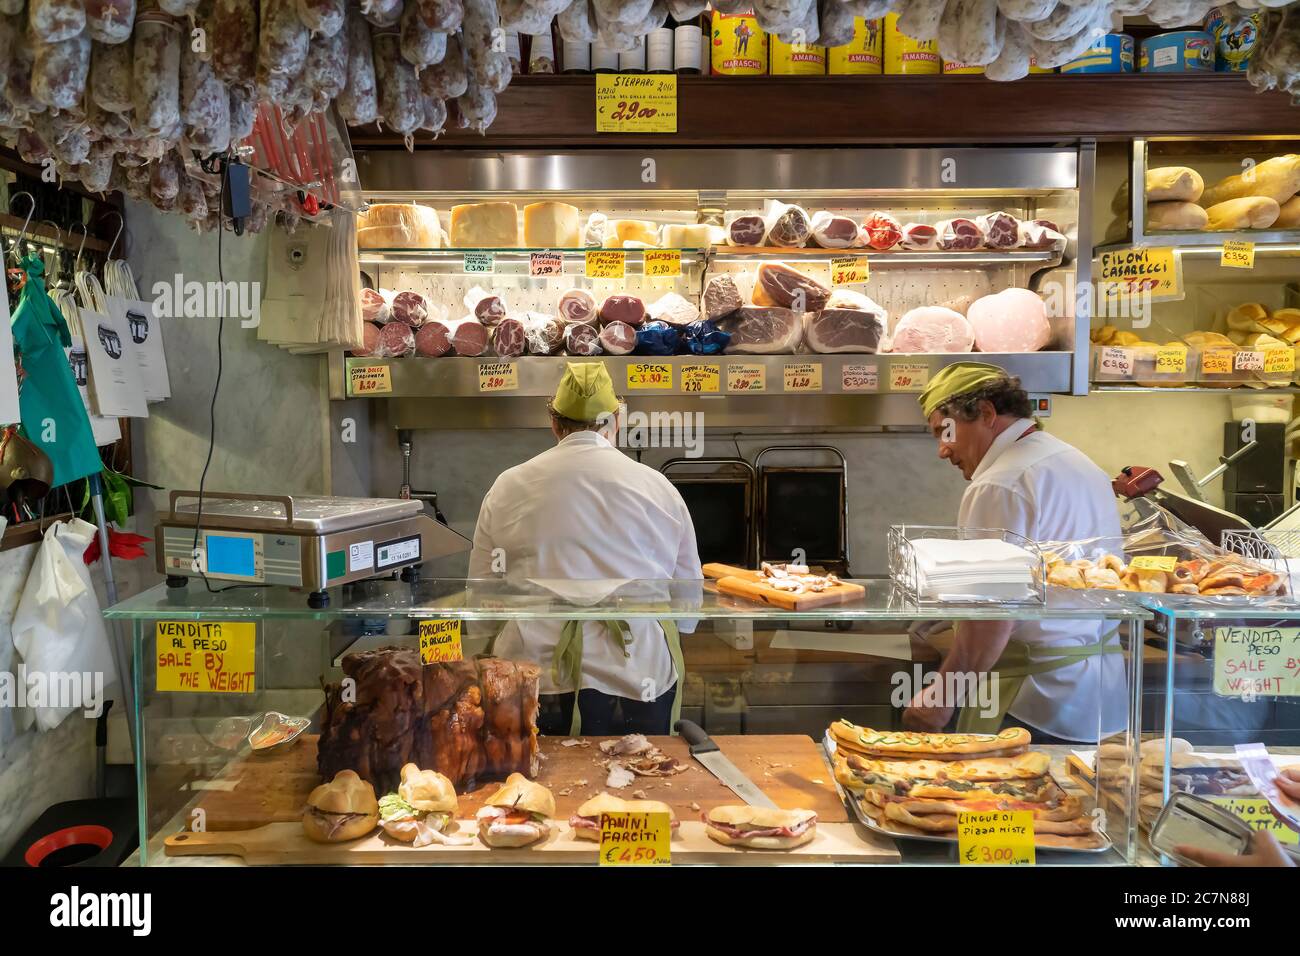 Rom/Italien - 09.10.2017; EIN typisch italienisches Feinkostgeschäft, in dem zwei Männer Sandwiches mit frischen Zutaten zubereiten. Spezialitäten werden angezeigt. Stockfoto